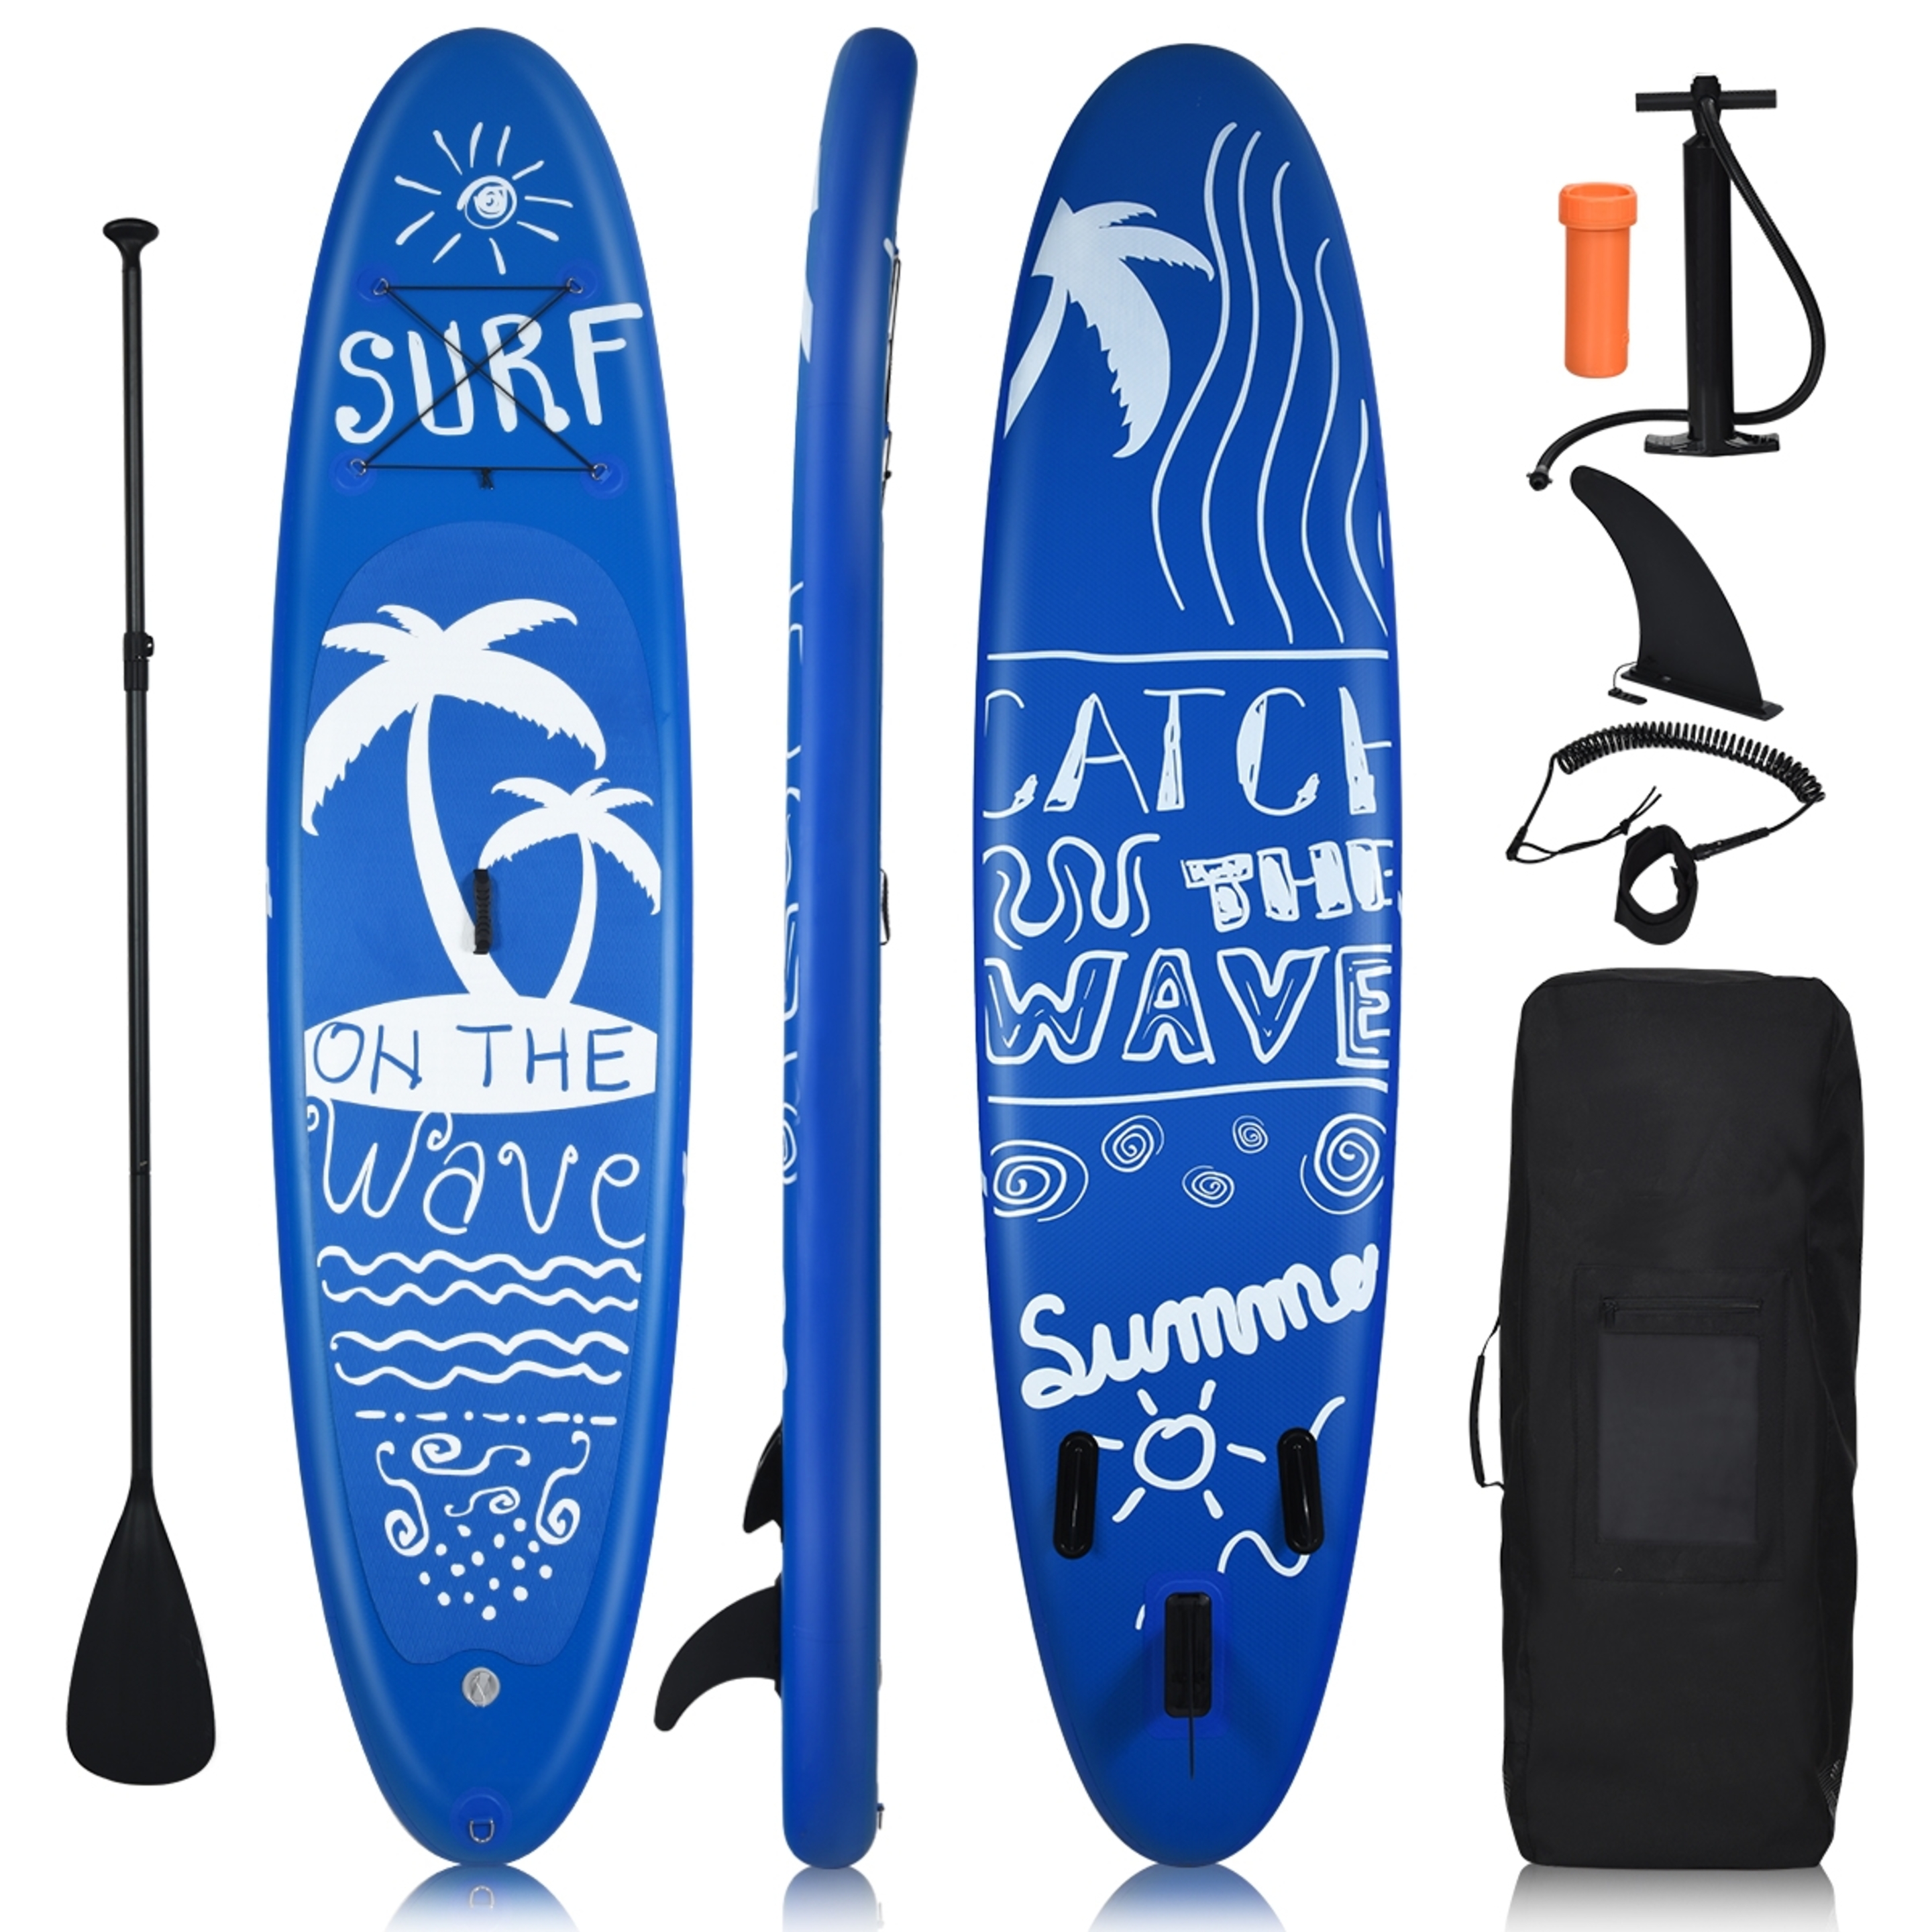 Tabla De Paddleboard Inflable Costway Con Paleta Ajustable 297 Cm - Azul - Tabla De Surf  MKP